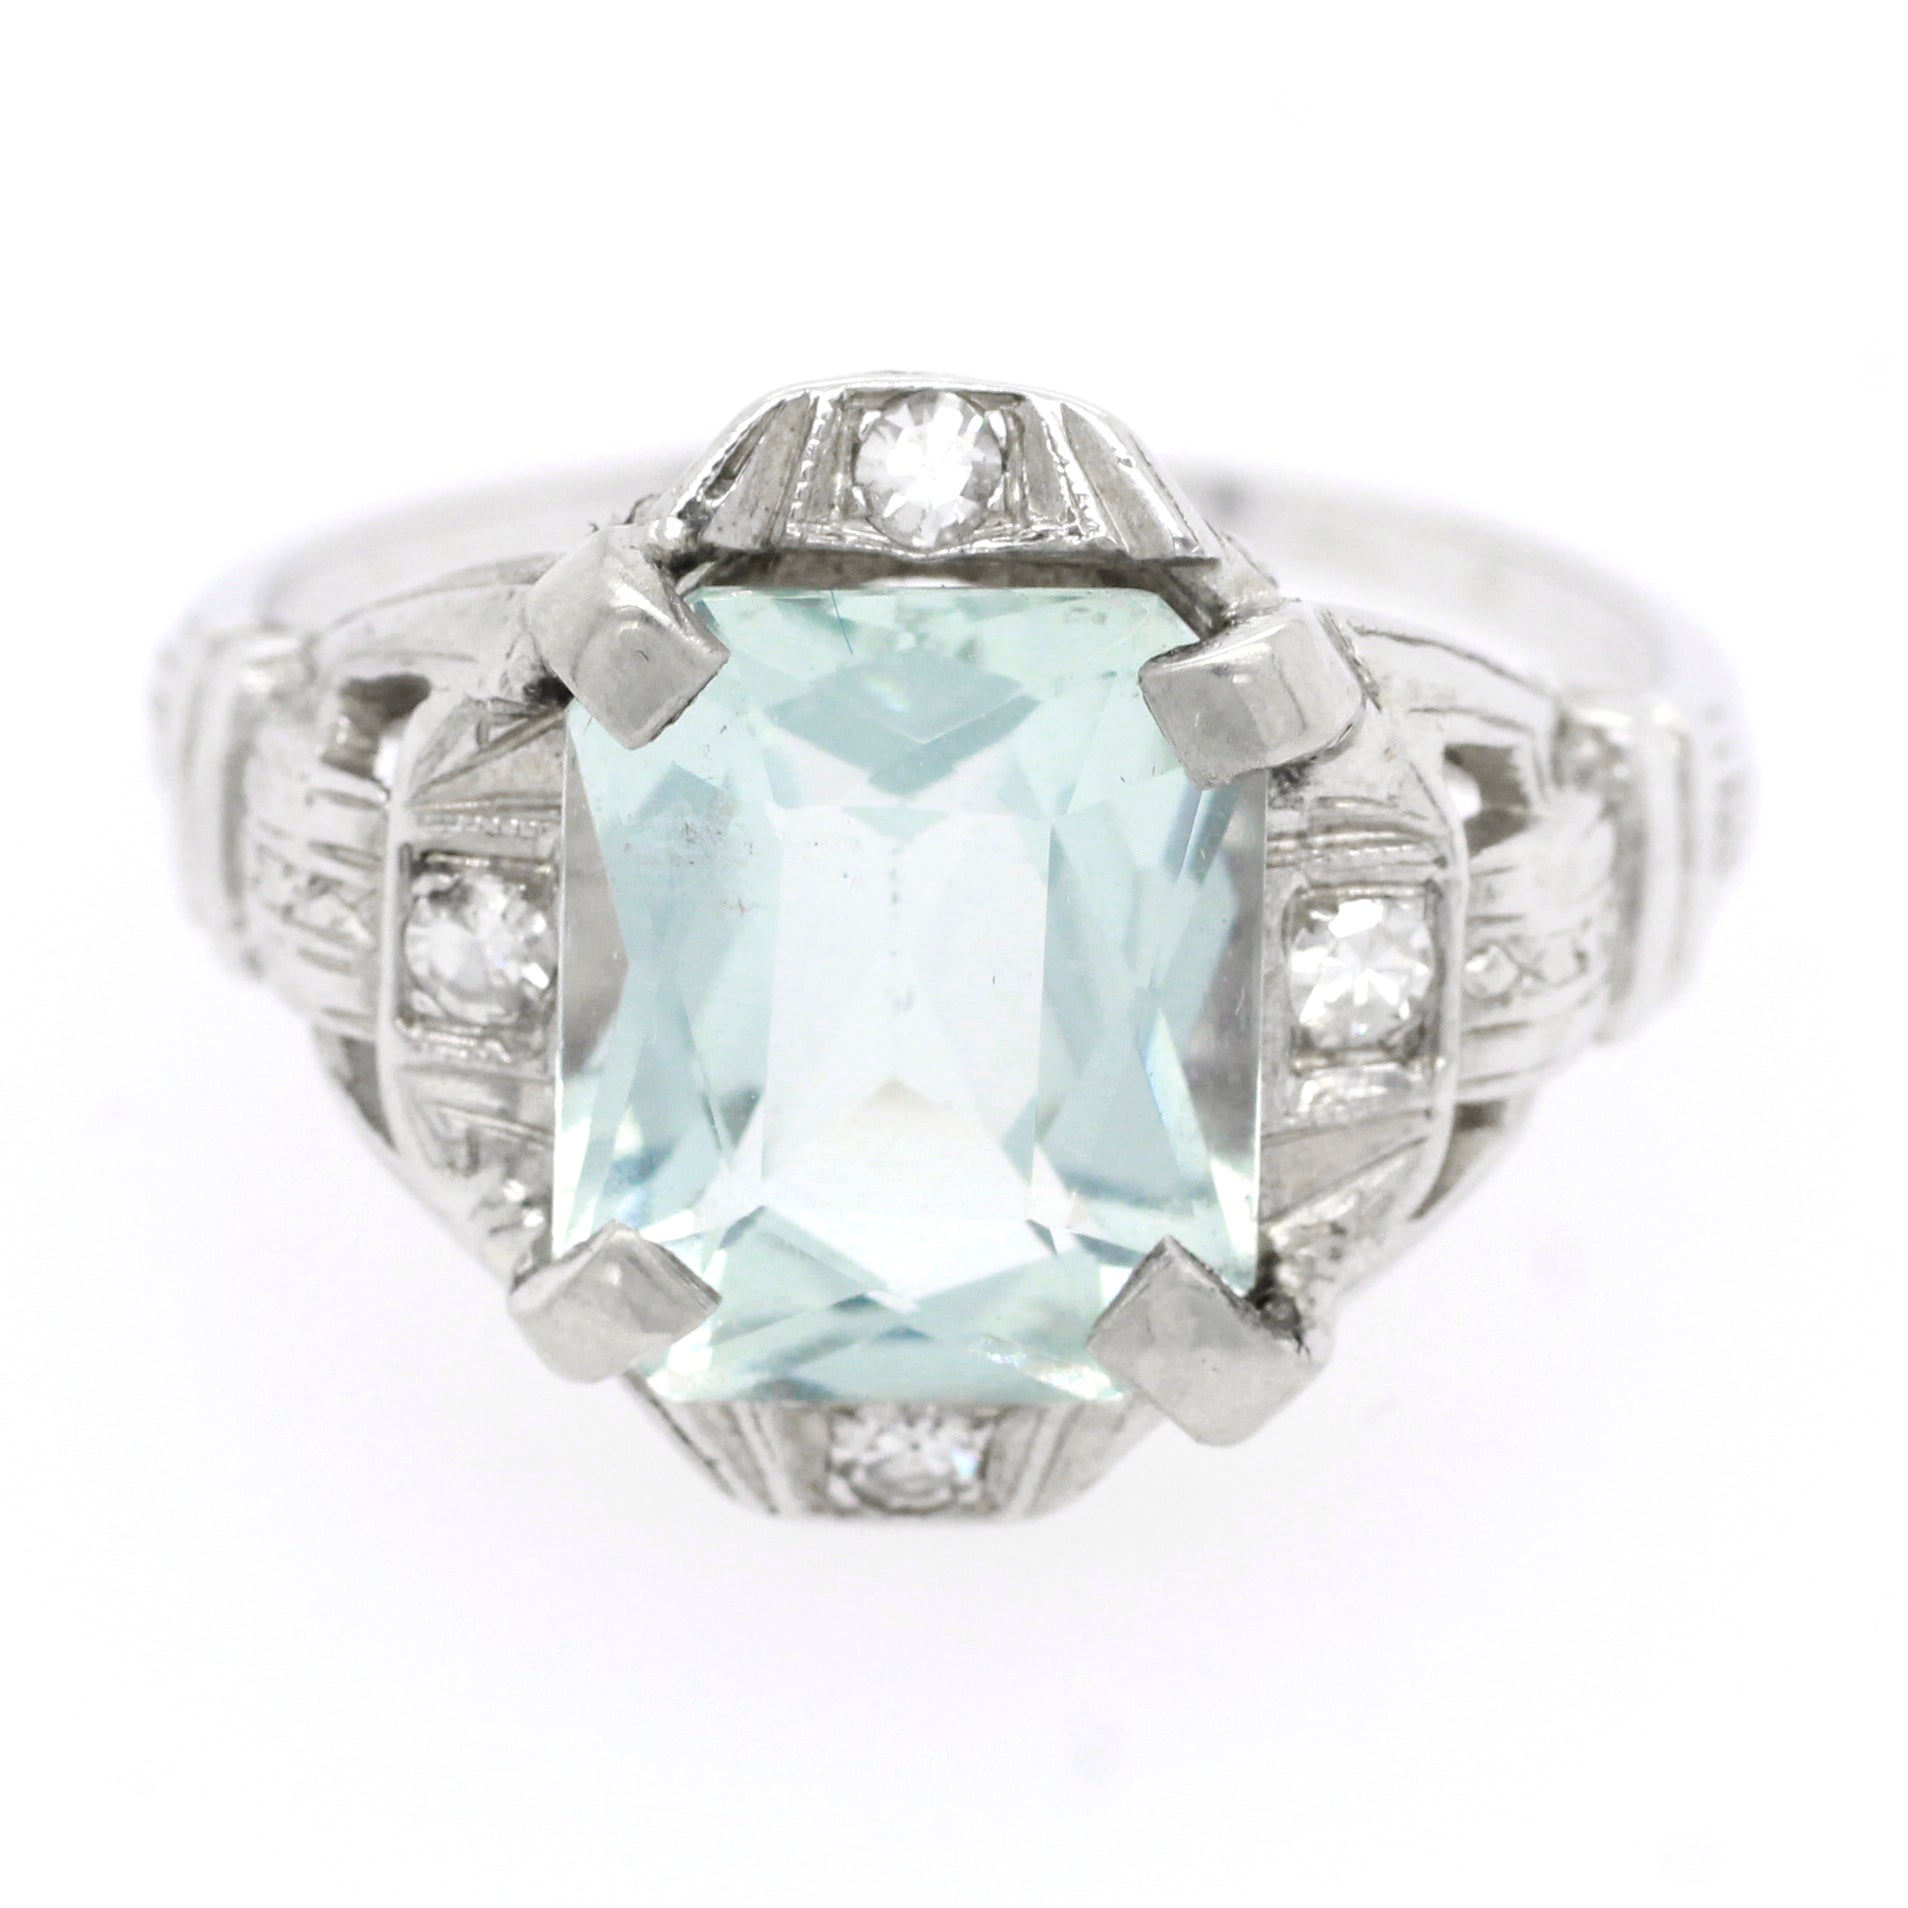 Antique Art Deco 3.00ct Aquamarine & Diamond Engagement Ring in 14k White Gold